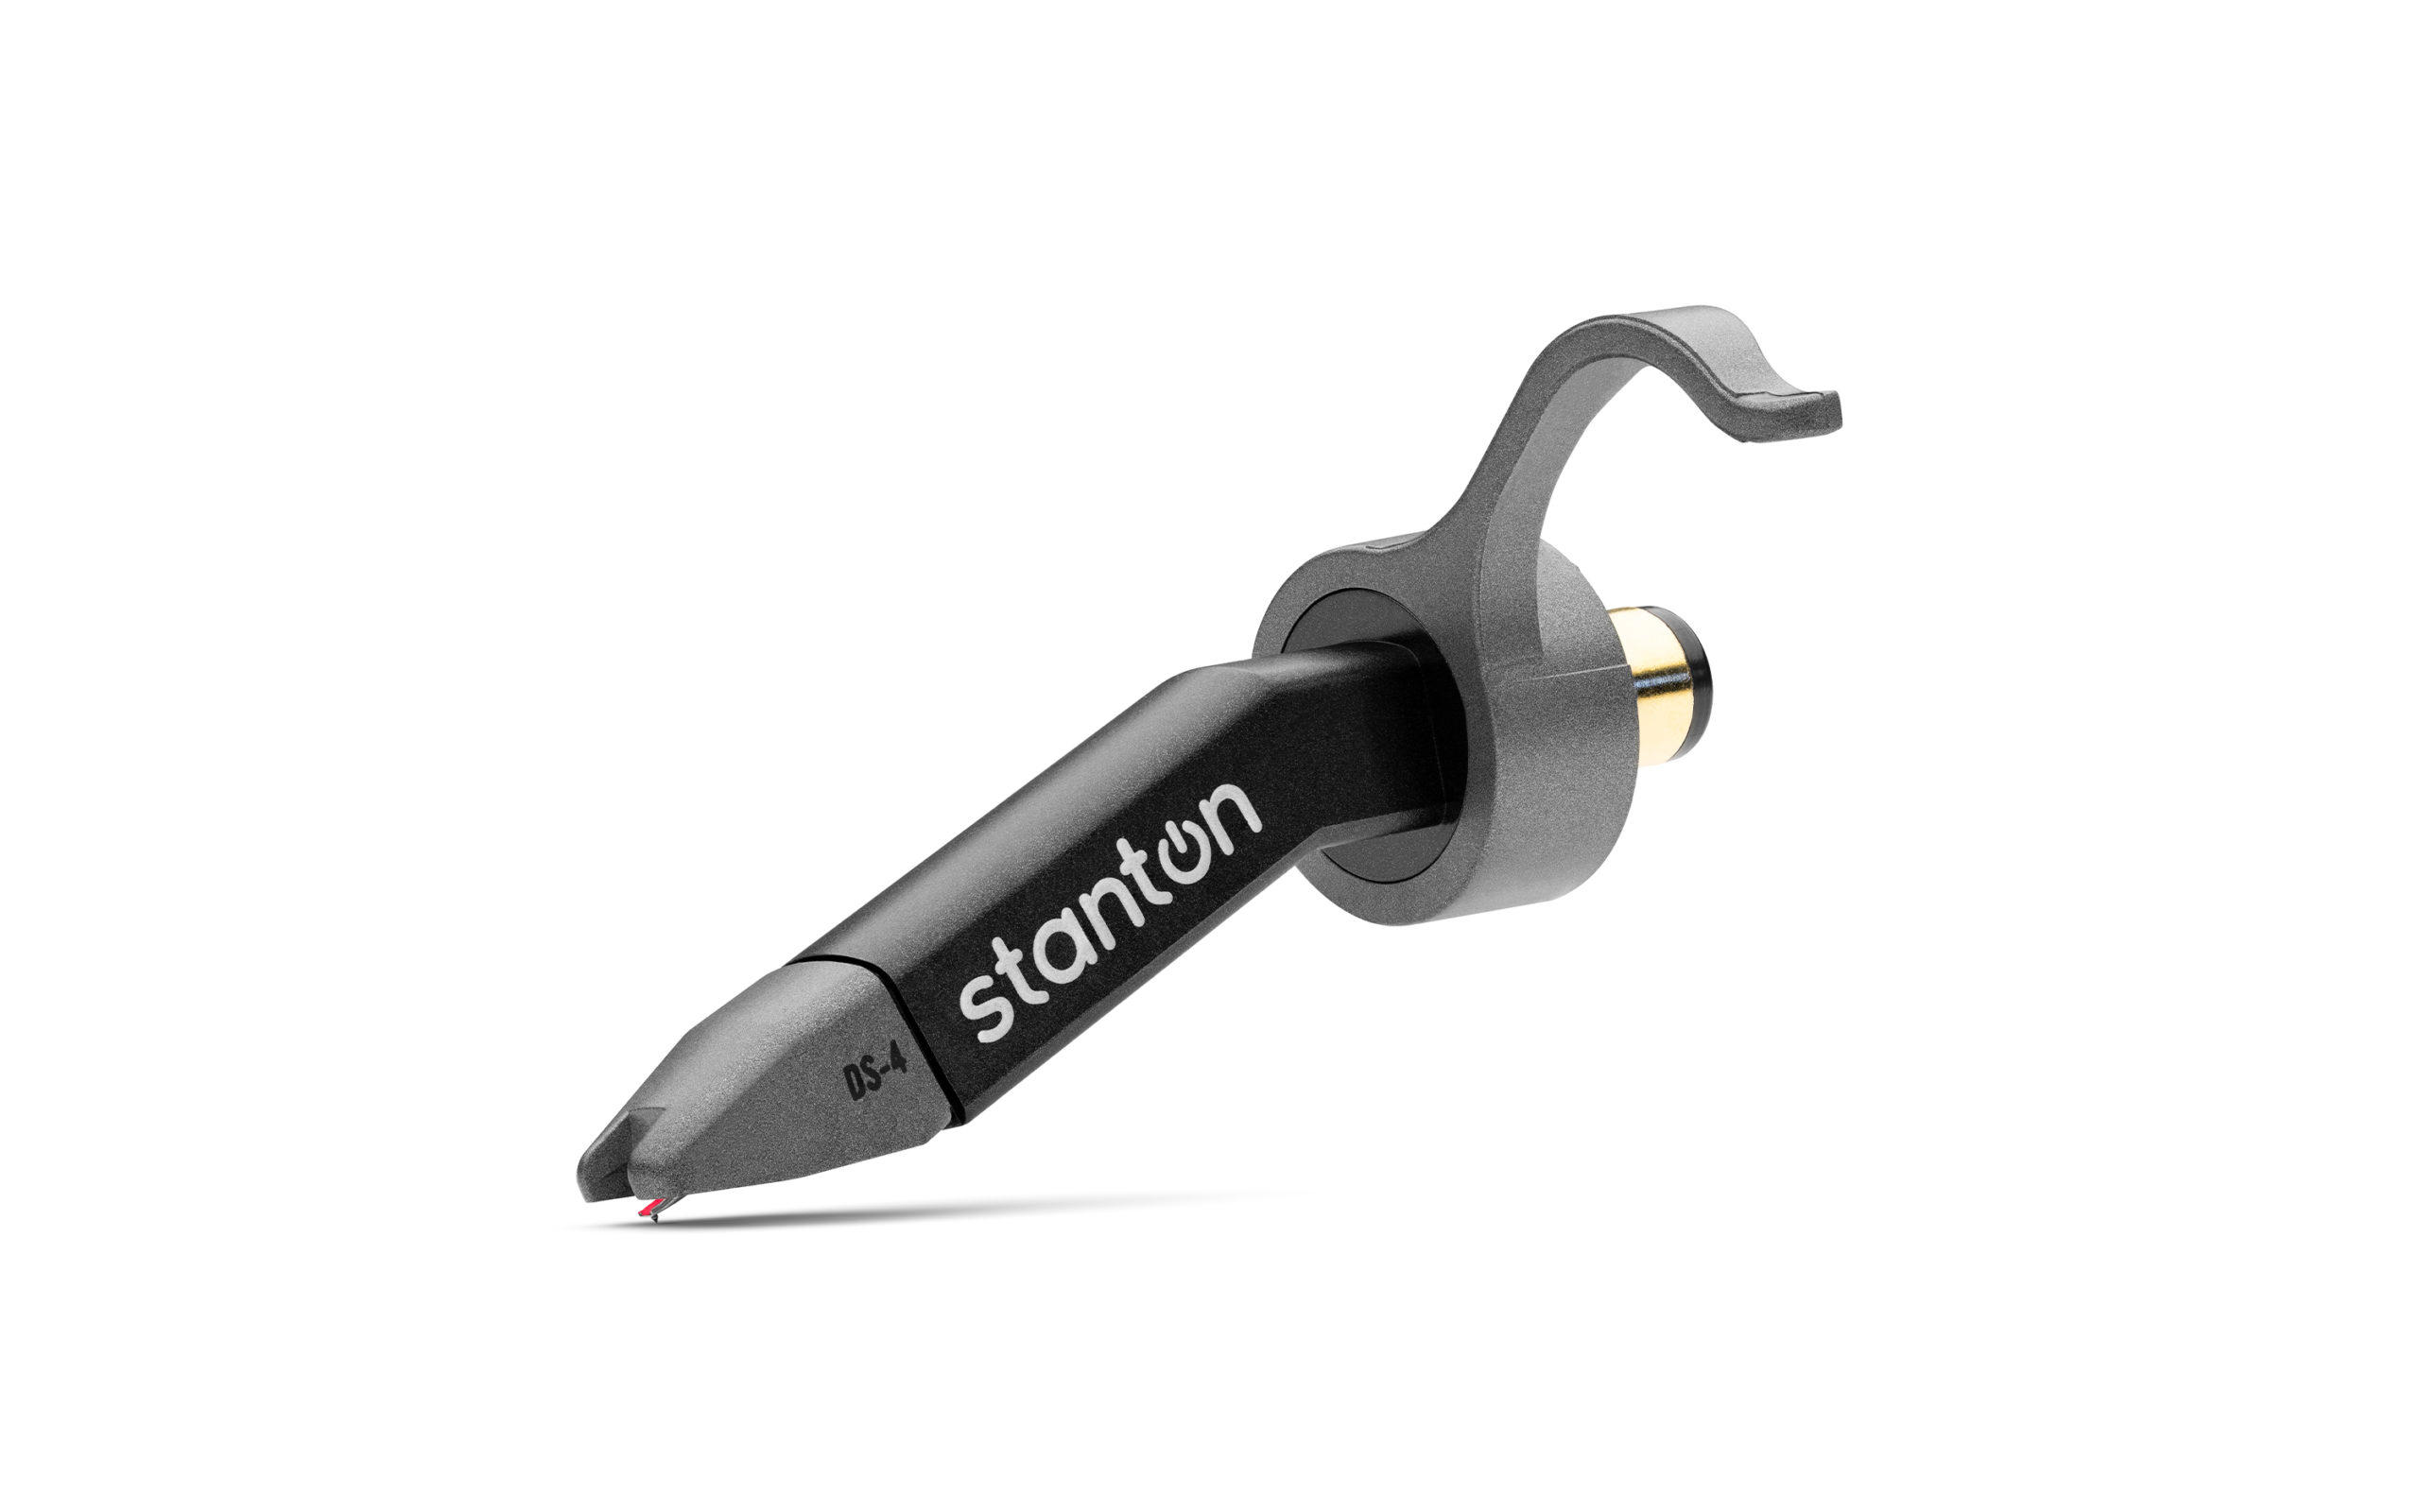 Nuevos productos de Stanton, agujas Stanton DS4RS y cápsulas Stanton DS4